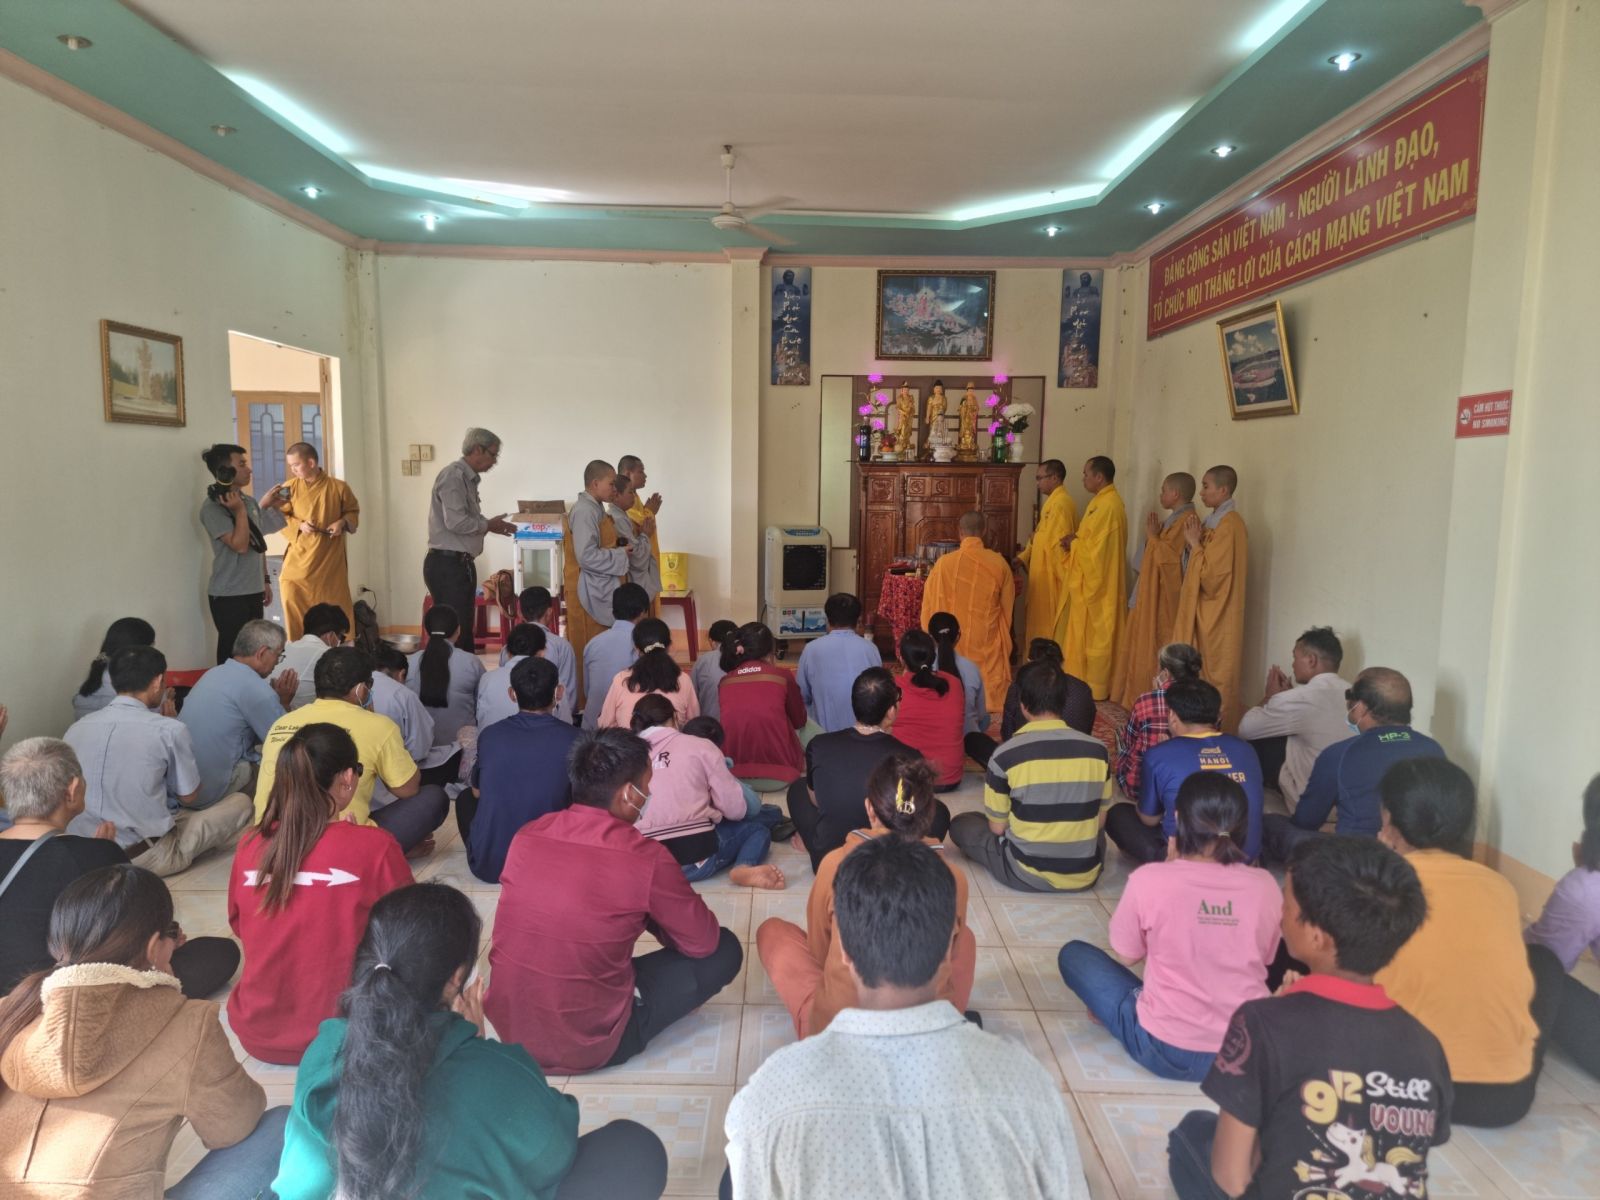 Ban HDPT, Ban Từ Thiện PG tỉnh Đắk Nông Thăm hỏi chúc tết, cầu an minh niên tại trụ sở Hội Người mù tỉnh